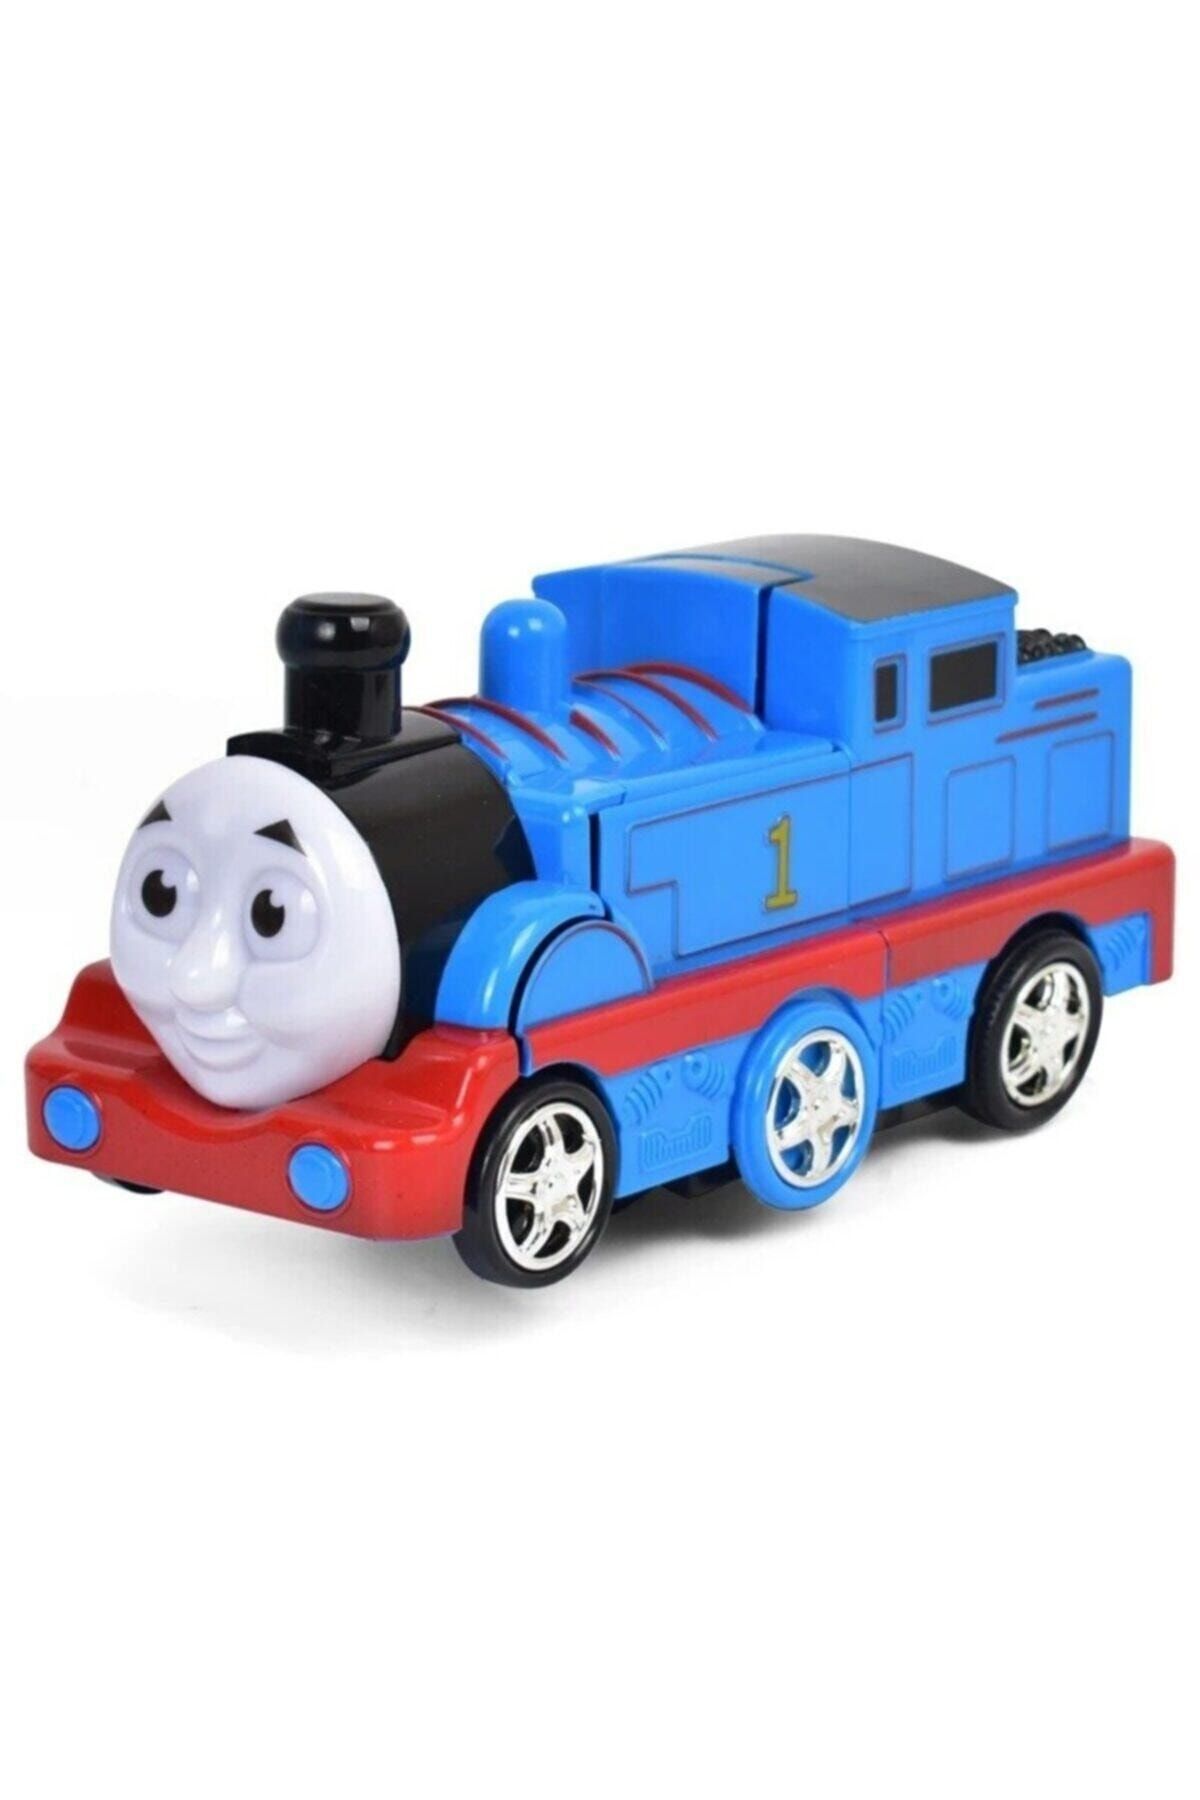 can oyuncak Işıklı Robota Dönüşebilen Tren Transformers Model Thomas